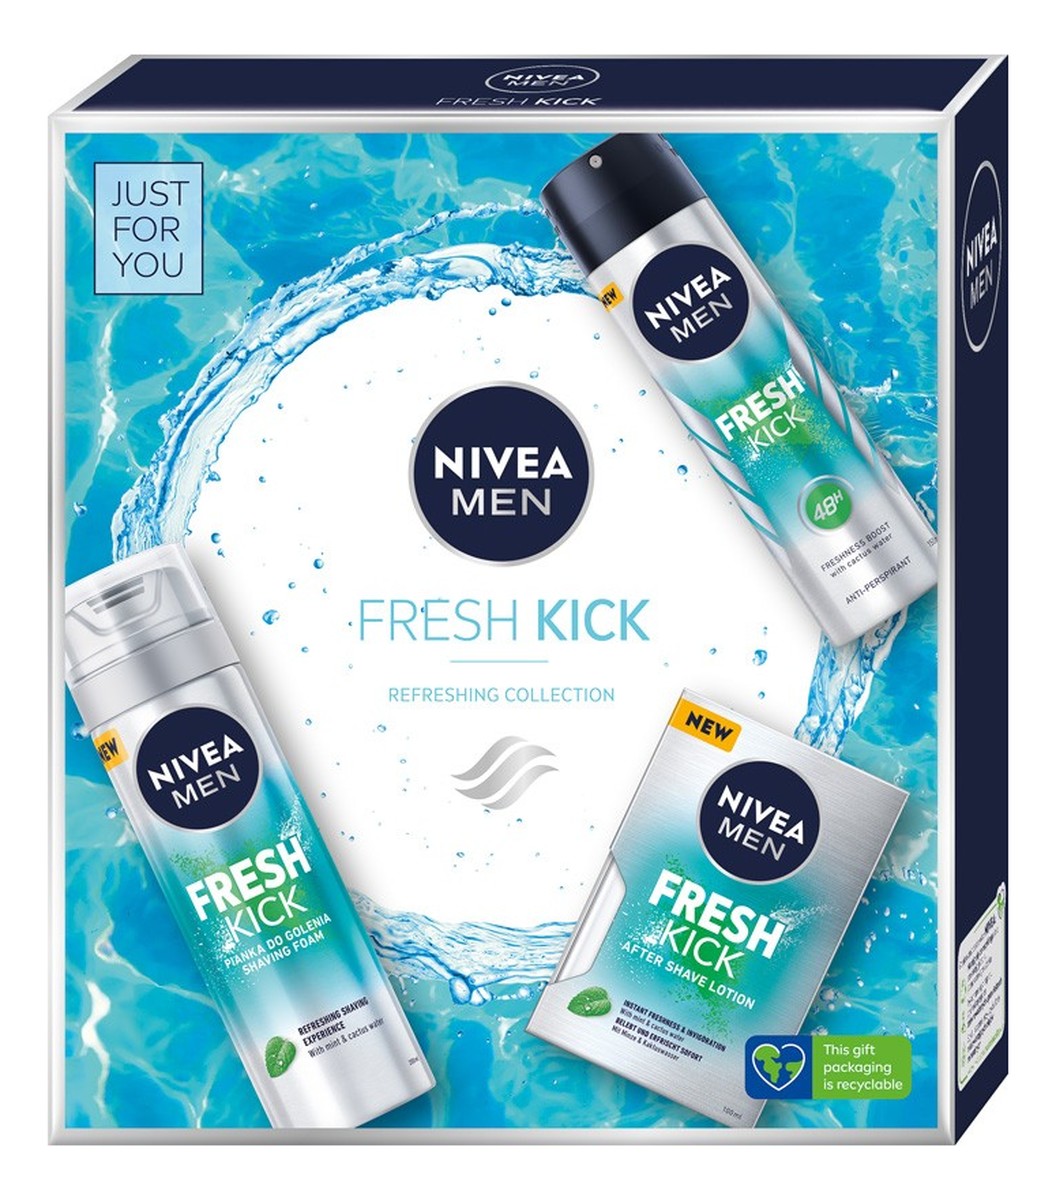 Zestaw prezentowy Fresh Kick deo spray + pianka do golenia + woda po goleniu